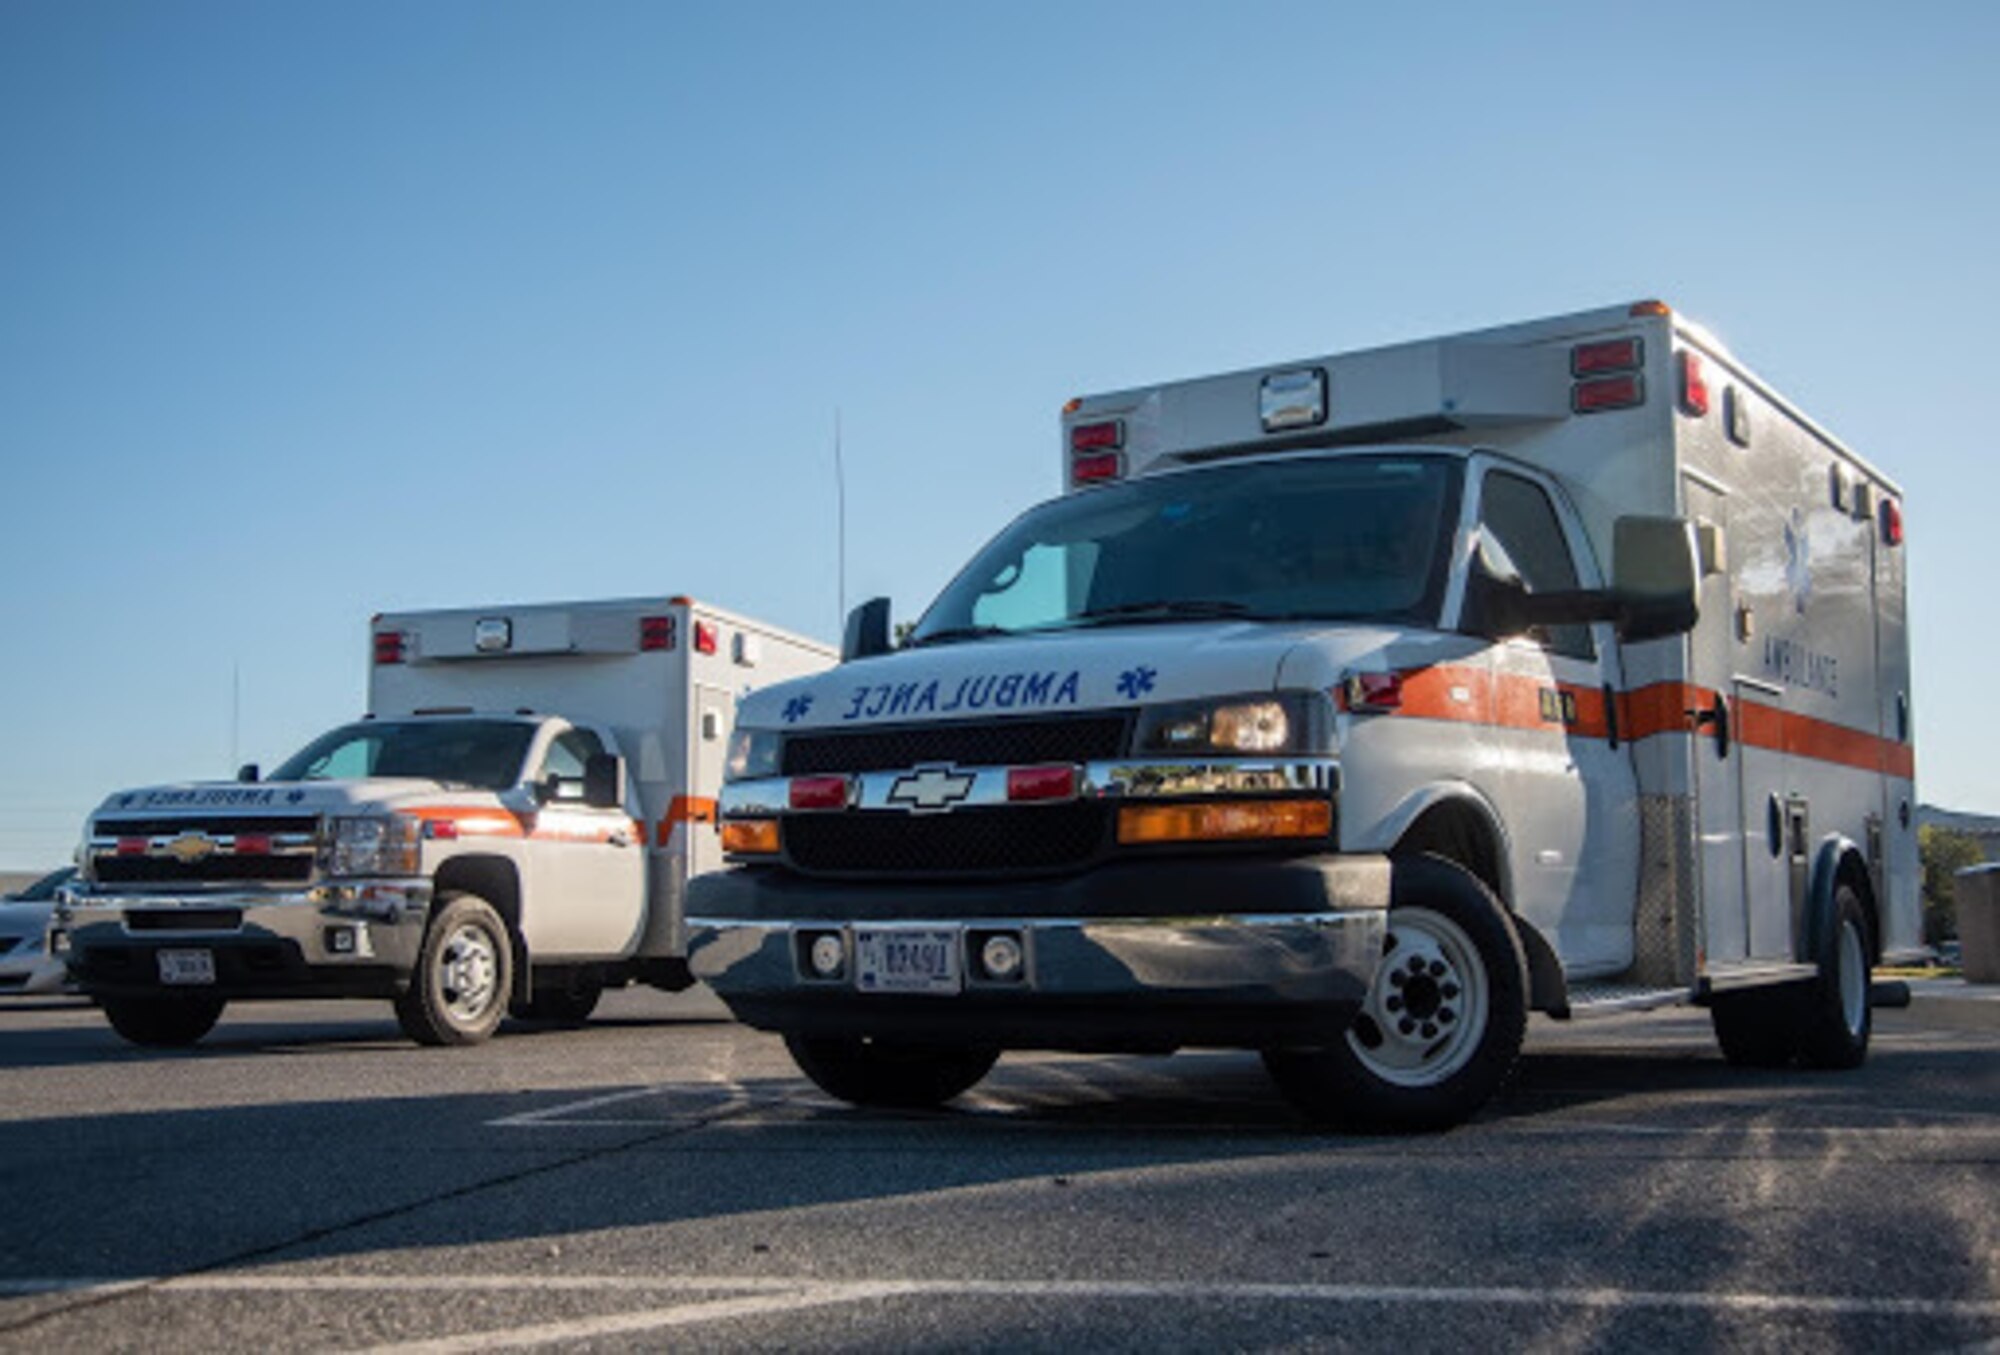 Image of ambulances sitting outside of the base theater.